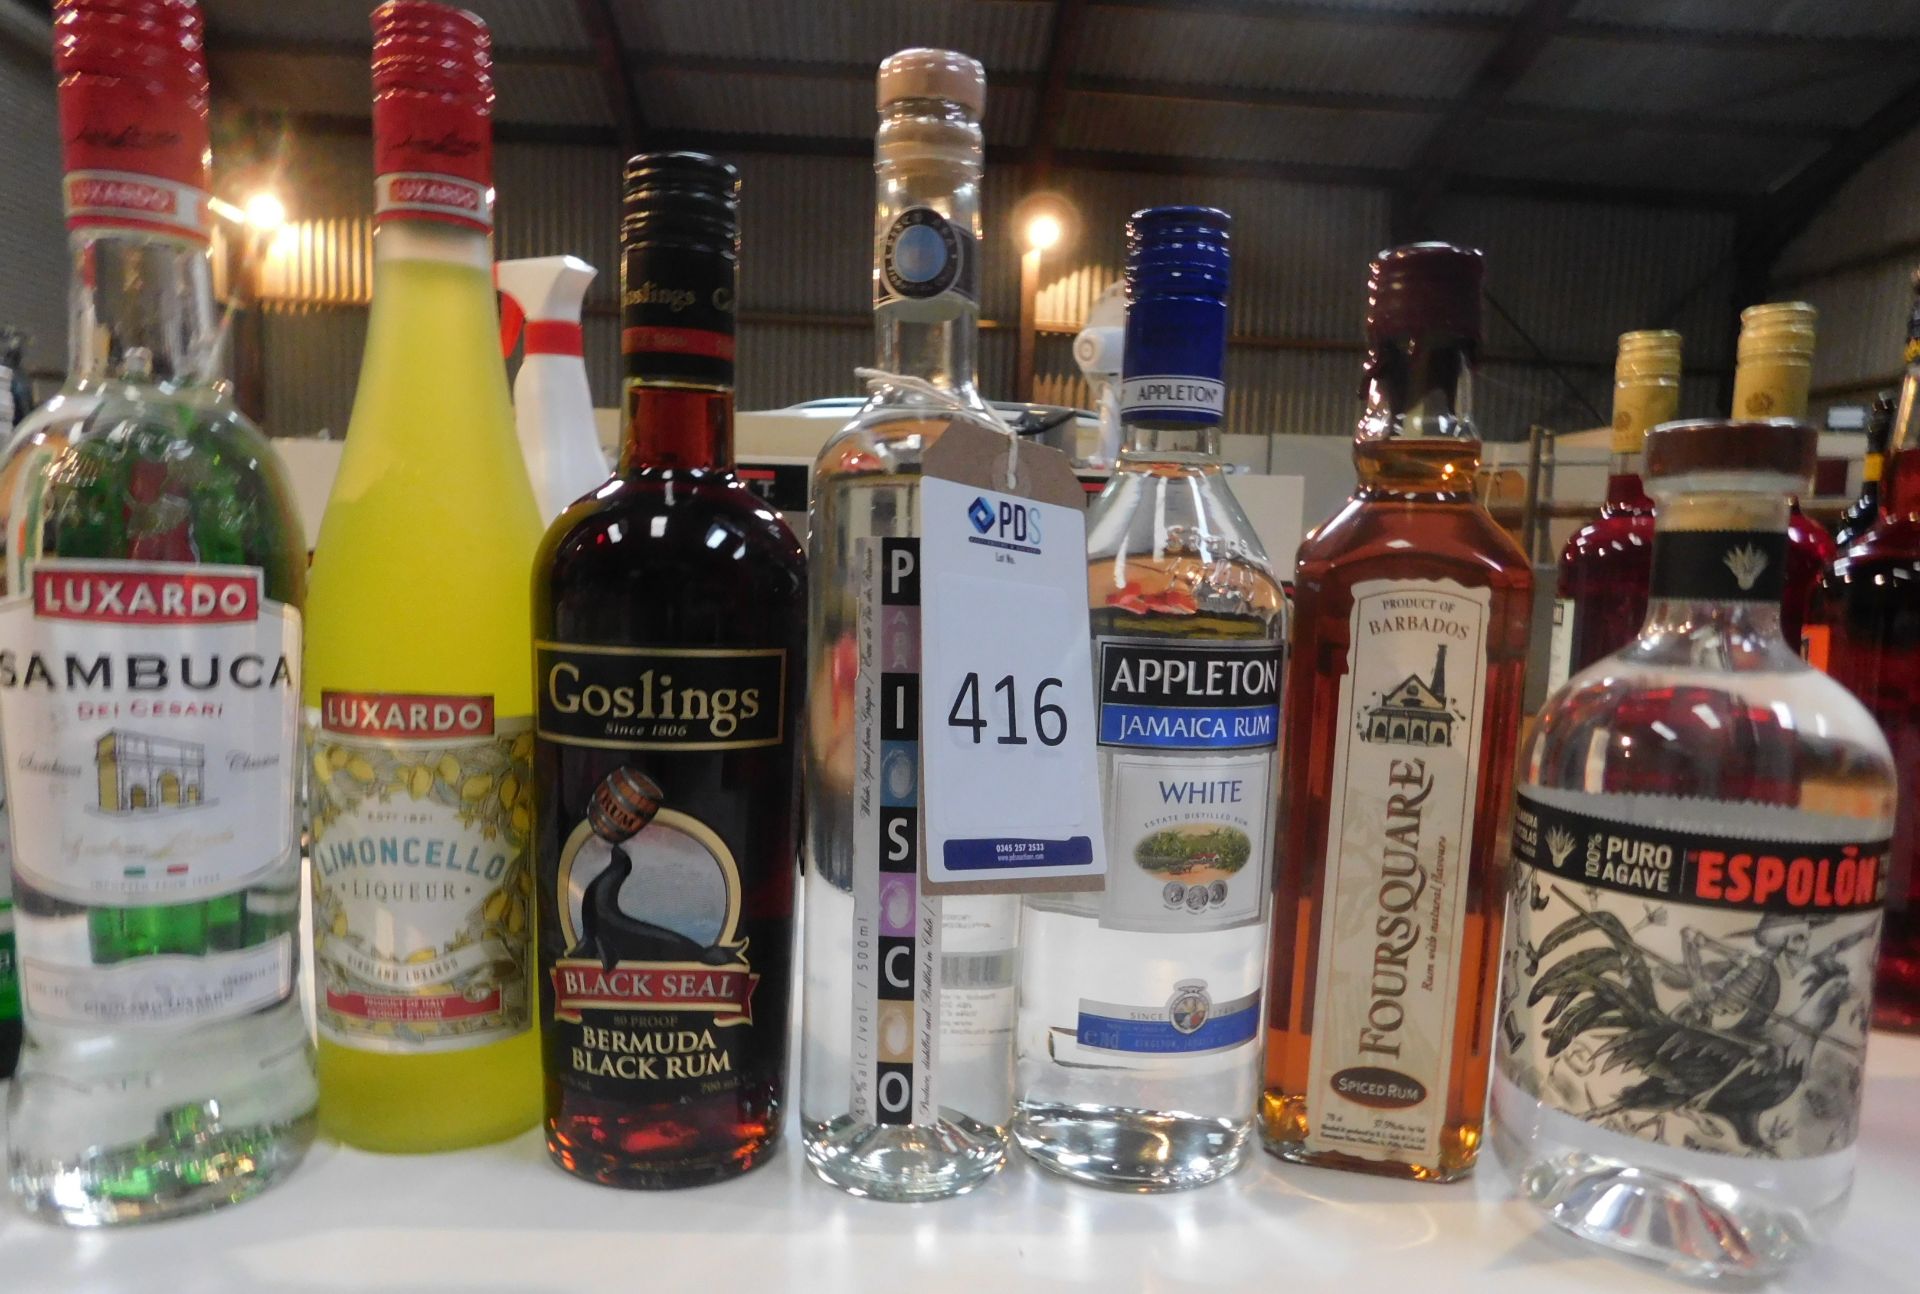 Goslings Rum, Muxerdo Limoncello; Appleton Jamaican Rum; Muxerdo Sambuca; 4 bottles of Square Rum;